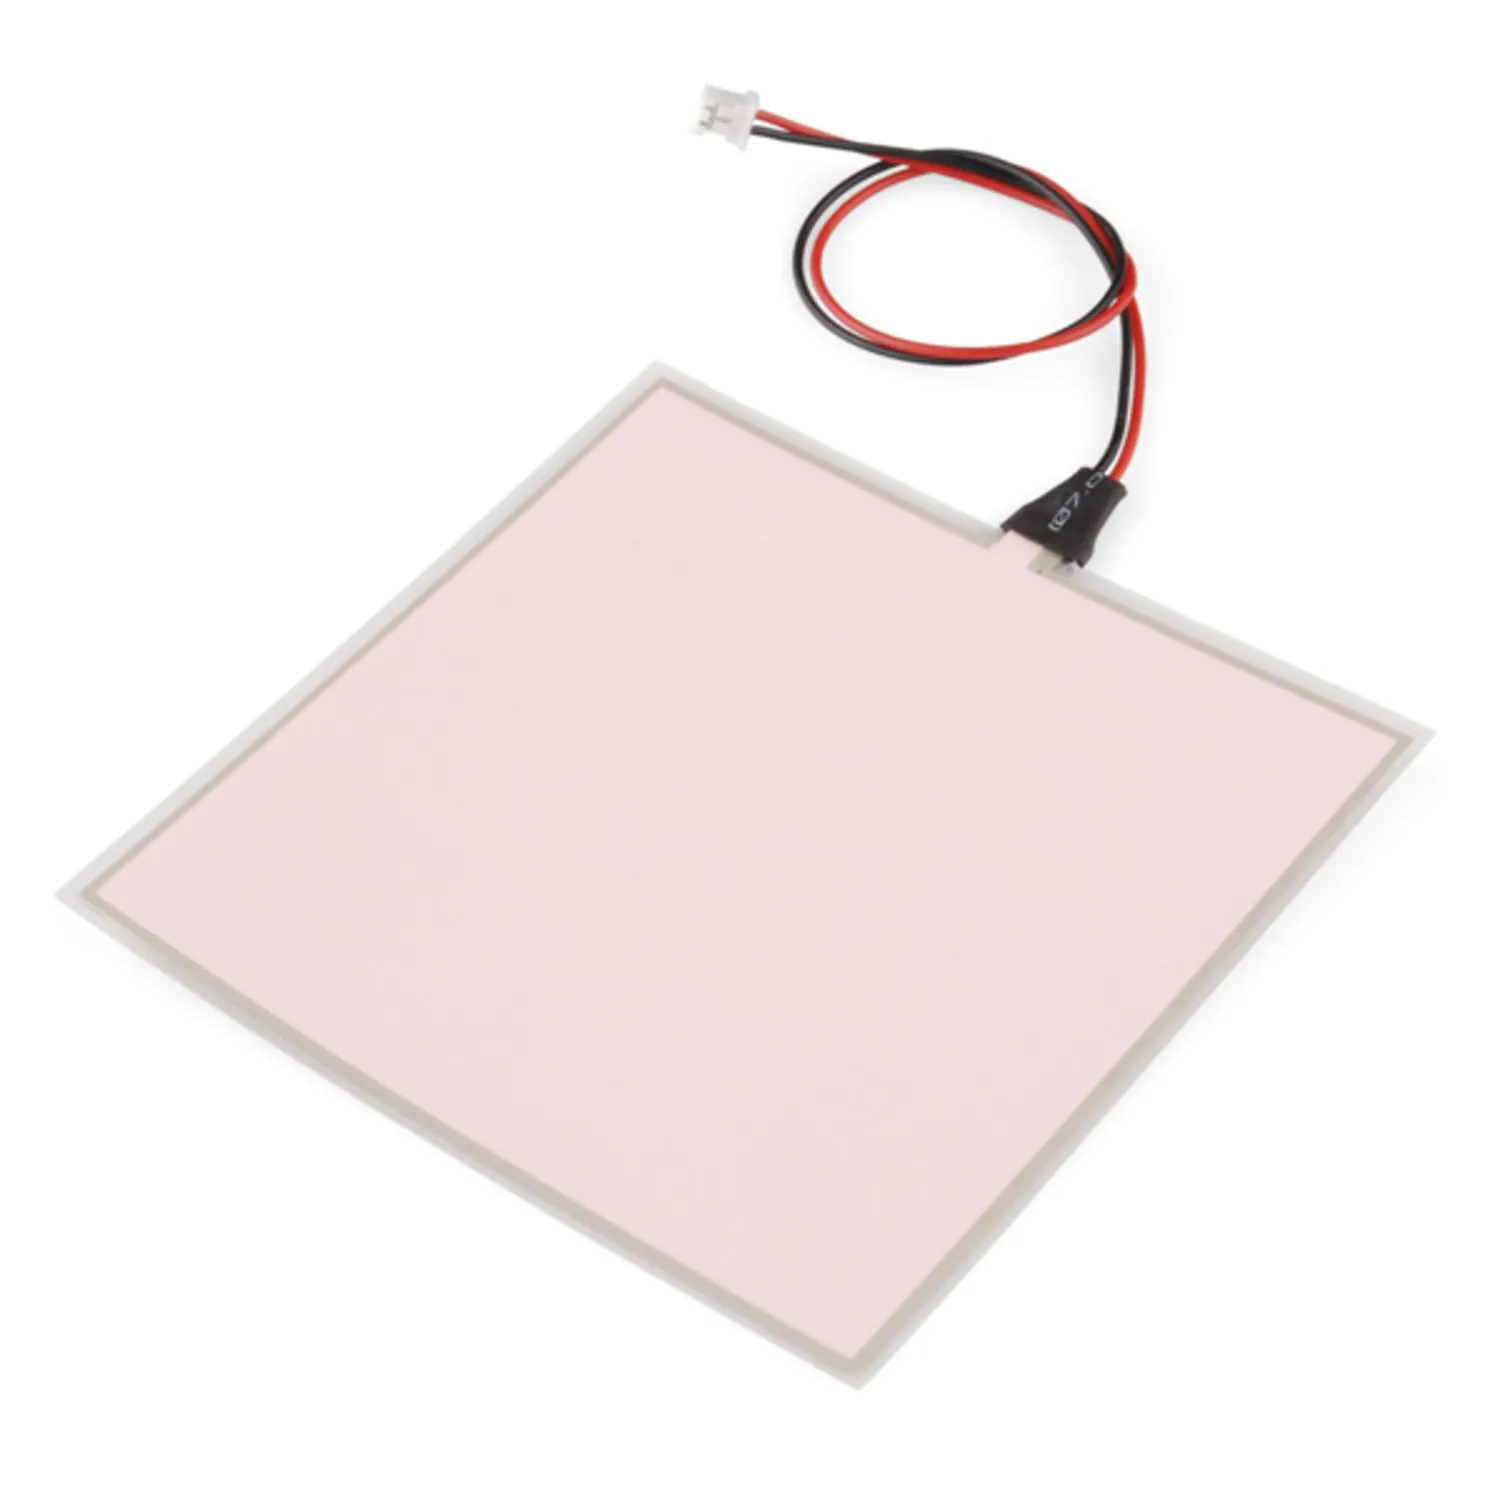 Photo of EL Panel - White (10x10cm)